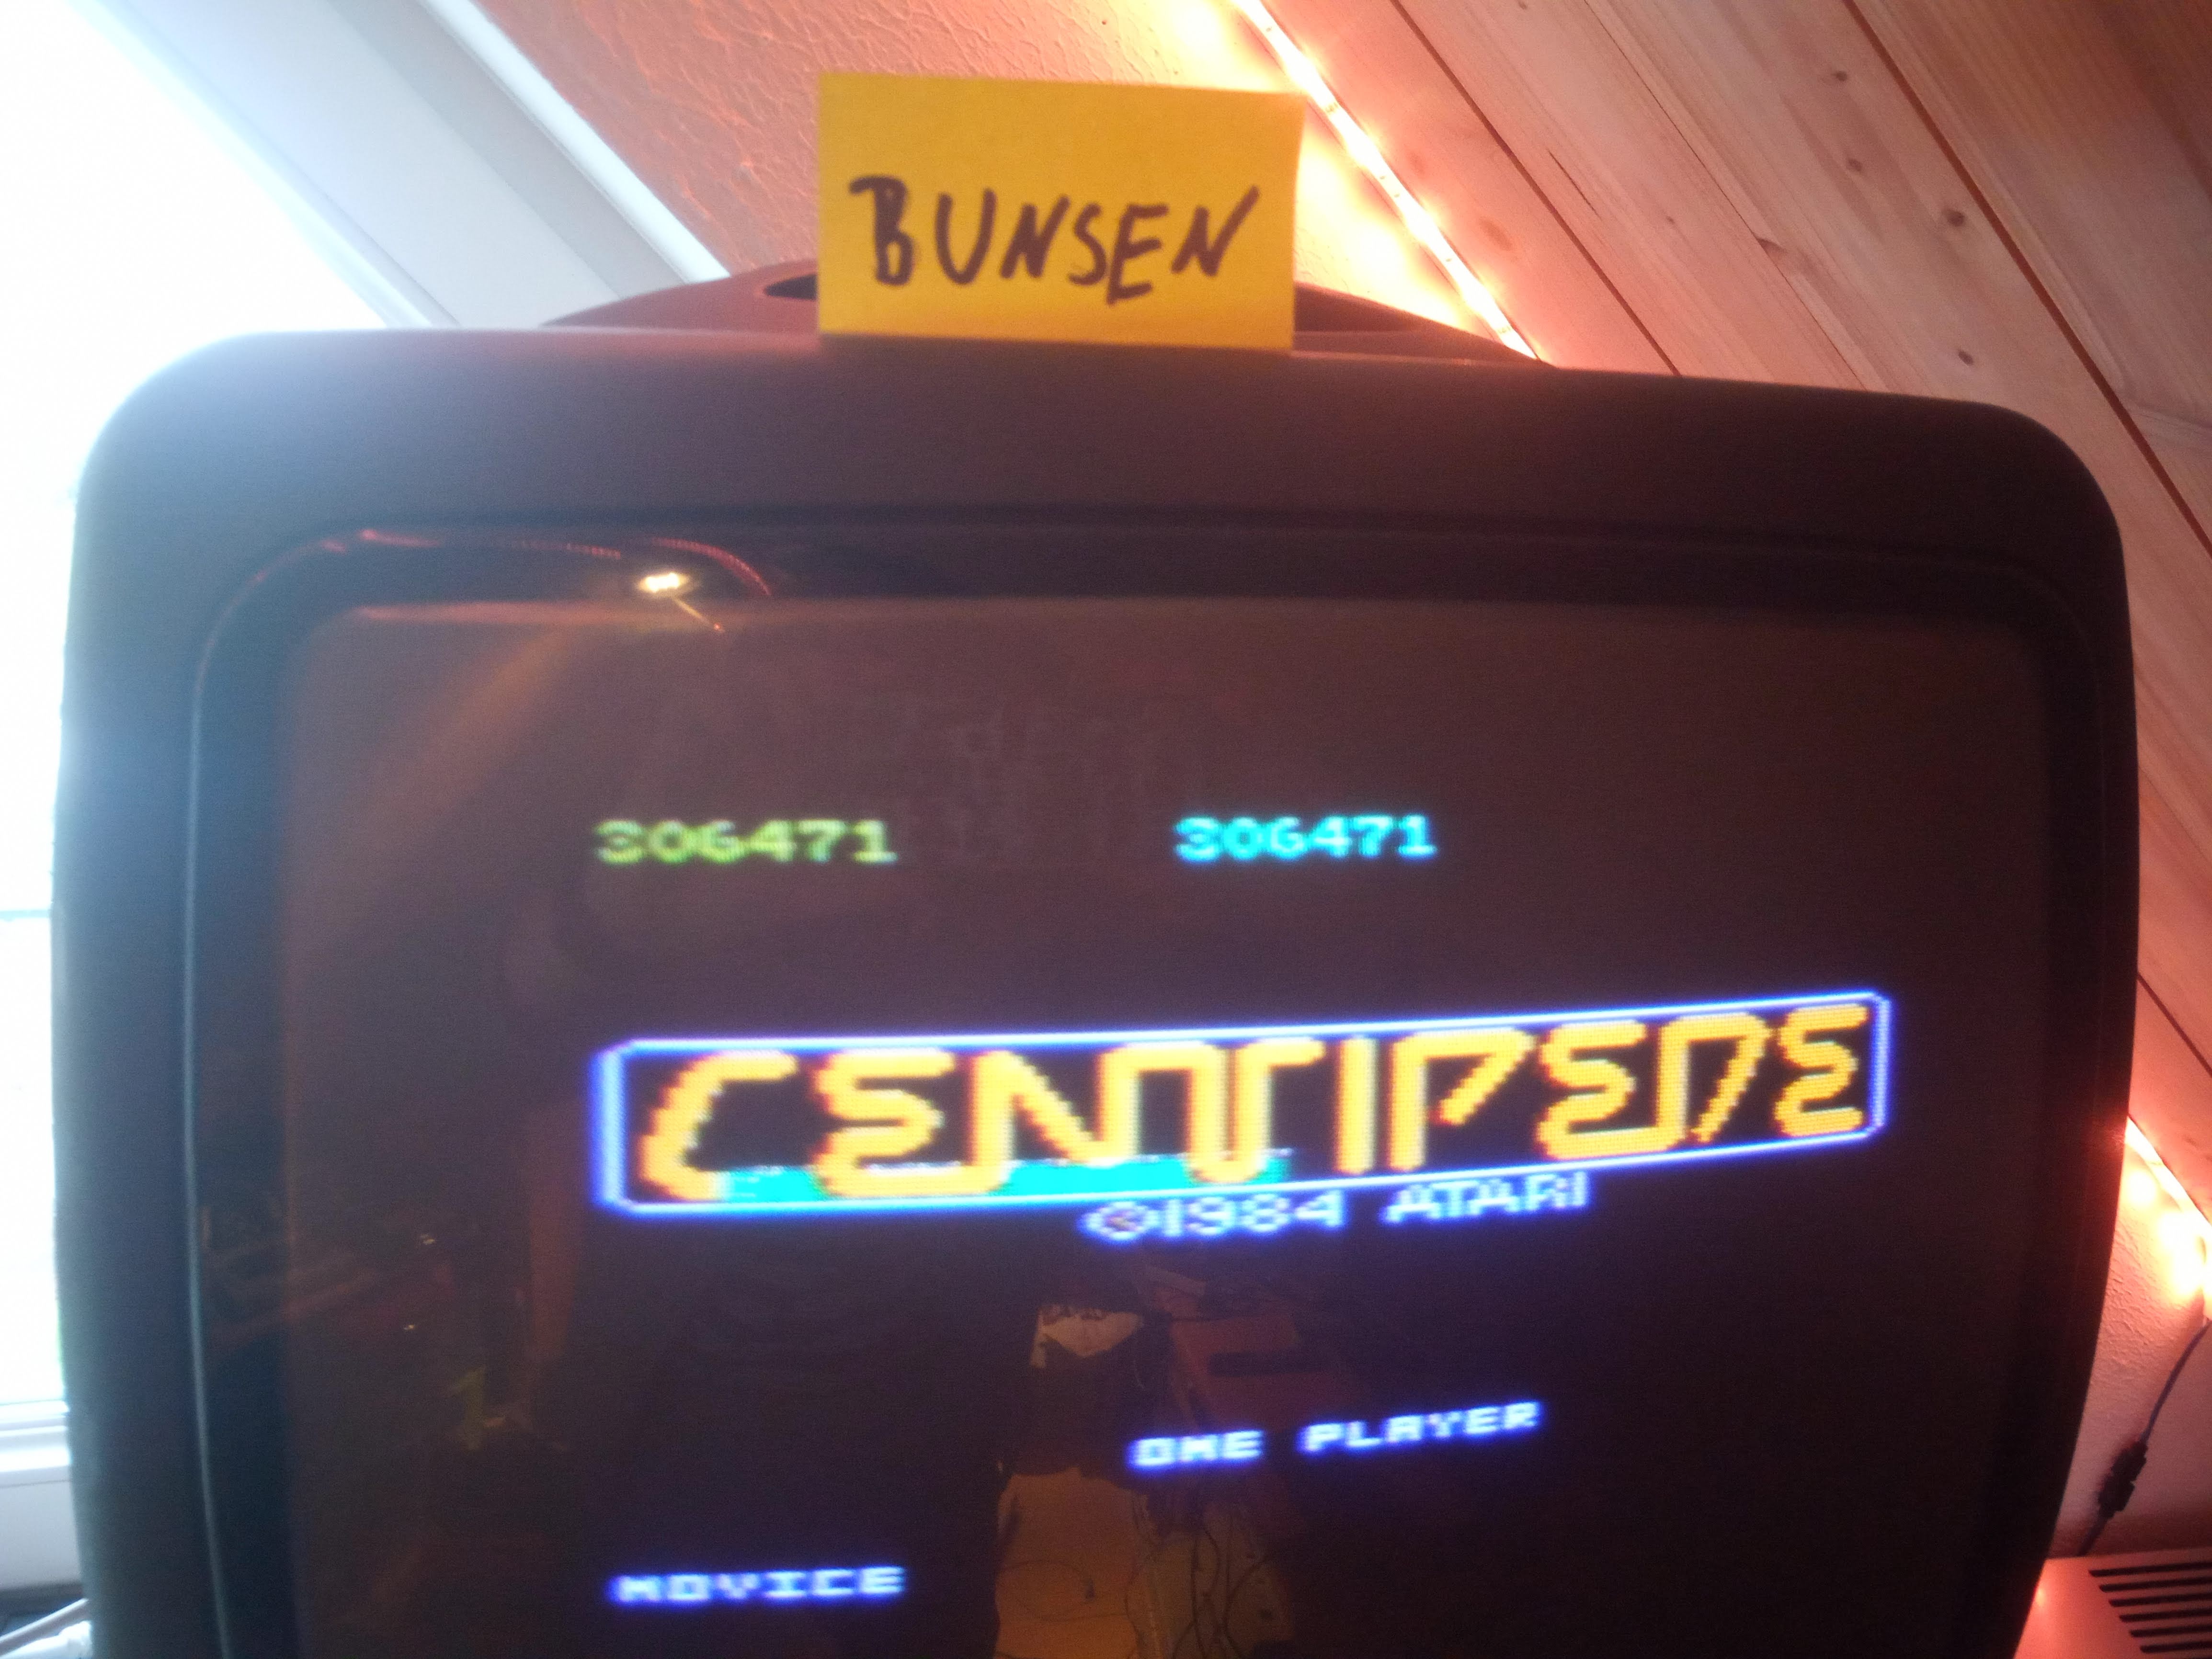 Bunsen: Centipede: Novice (Atari 7800) 306,471 points on 2020-04-29 08:45:53